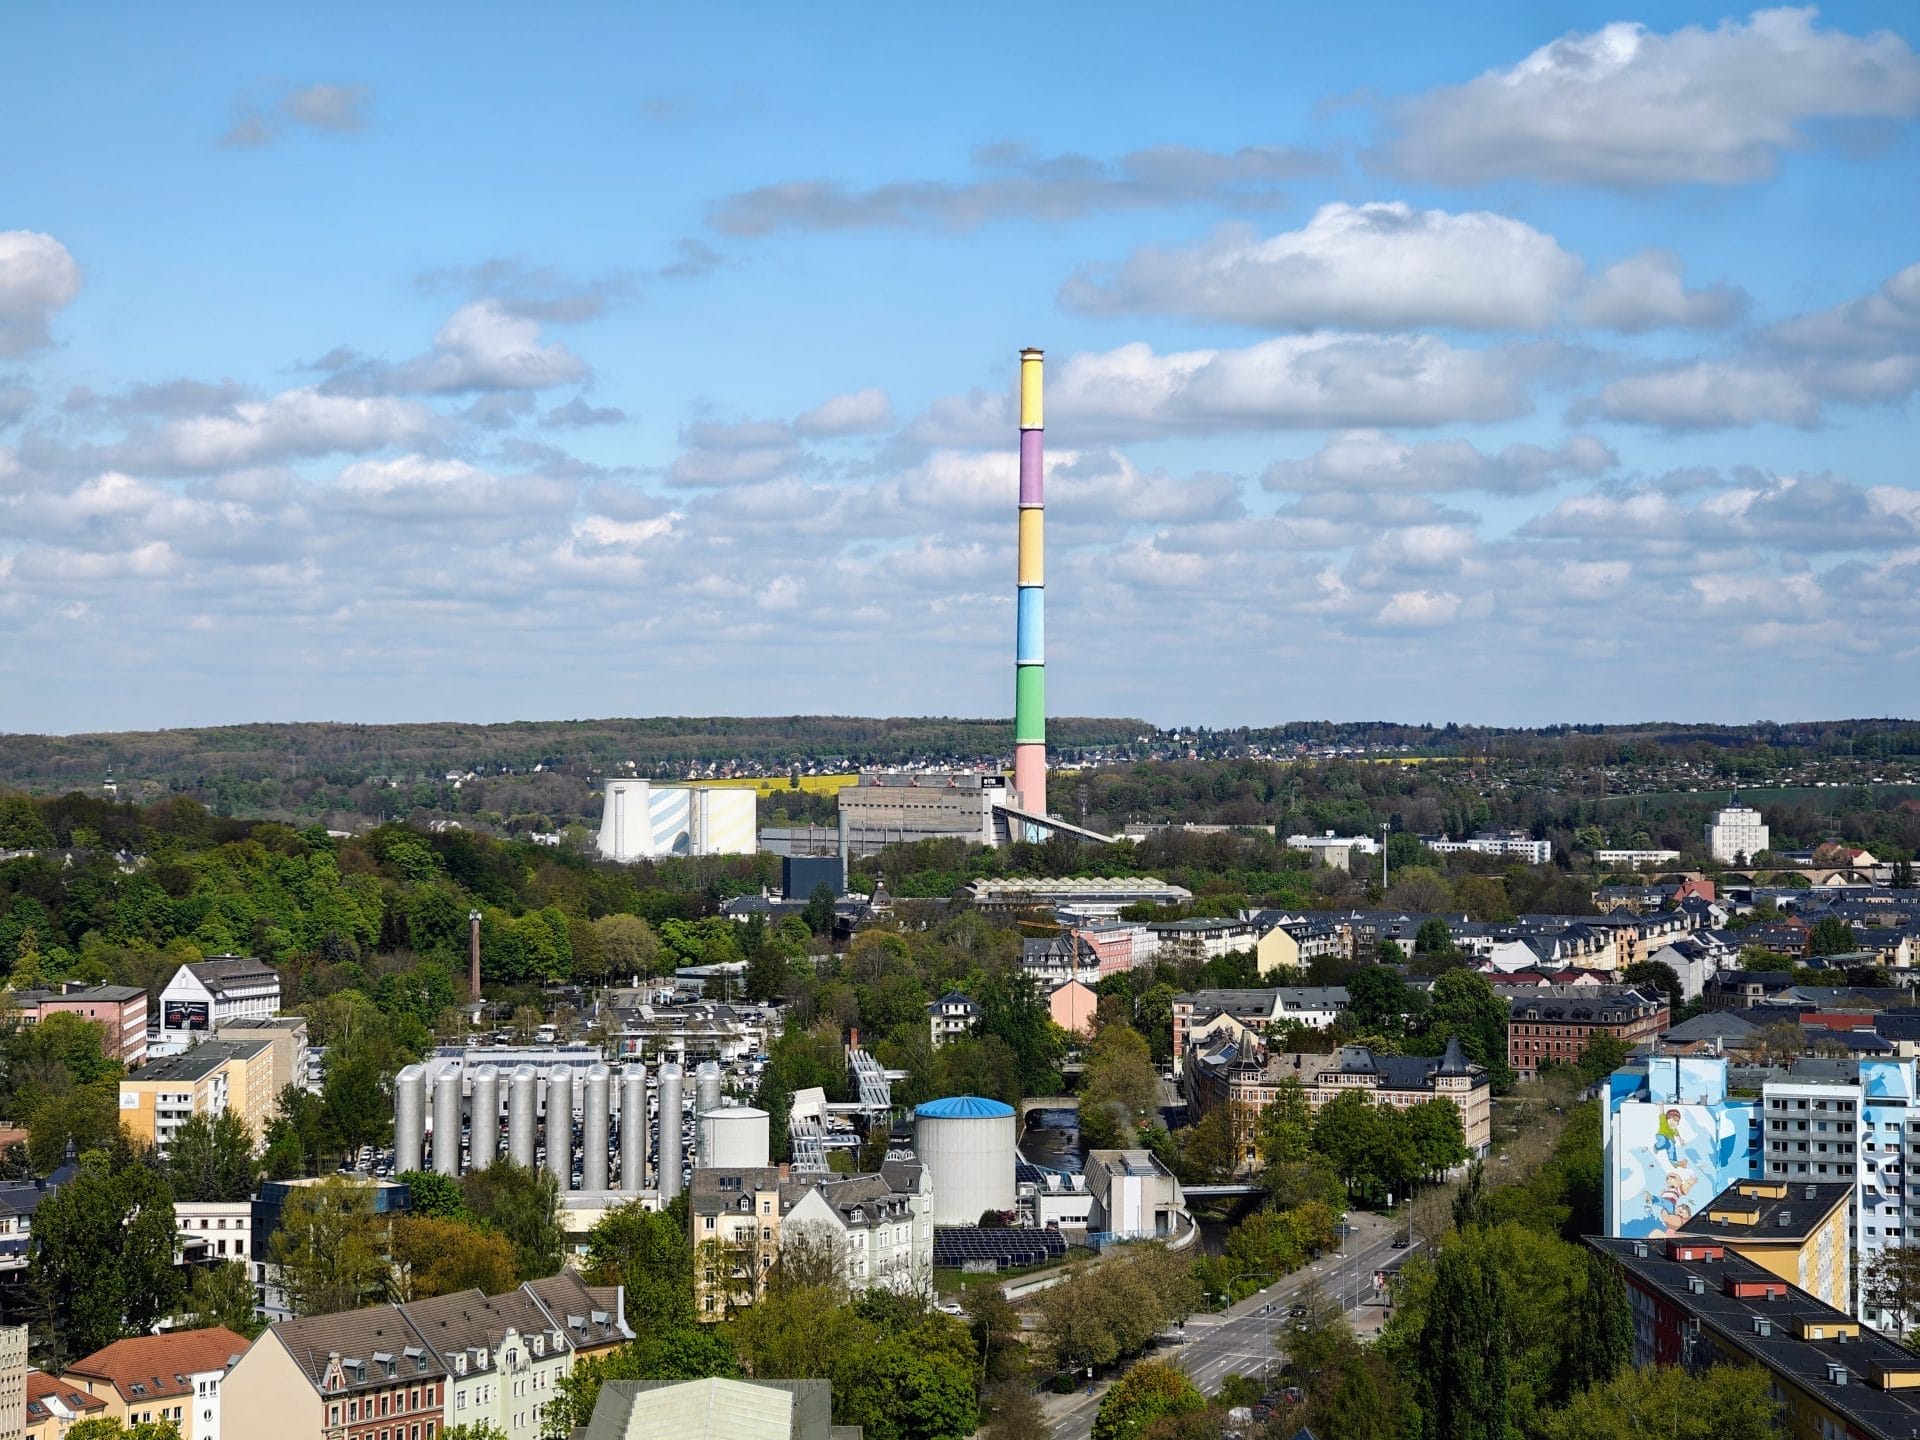 Stedentrip Chemnitz: culturele hoofdstad van Europa 2025